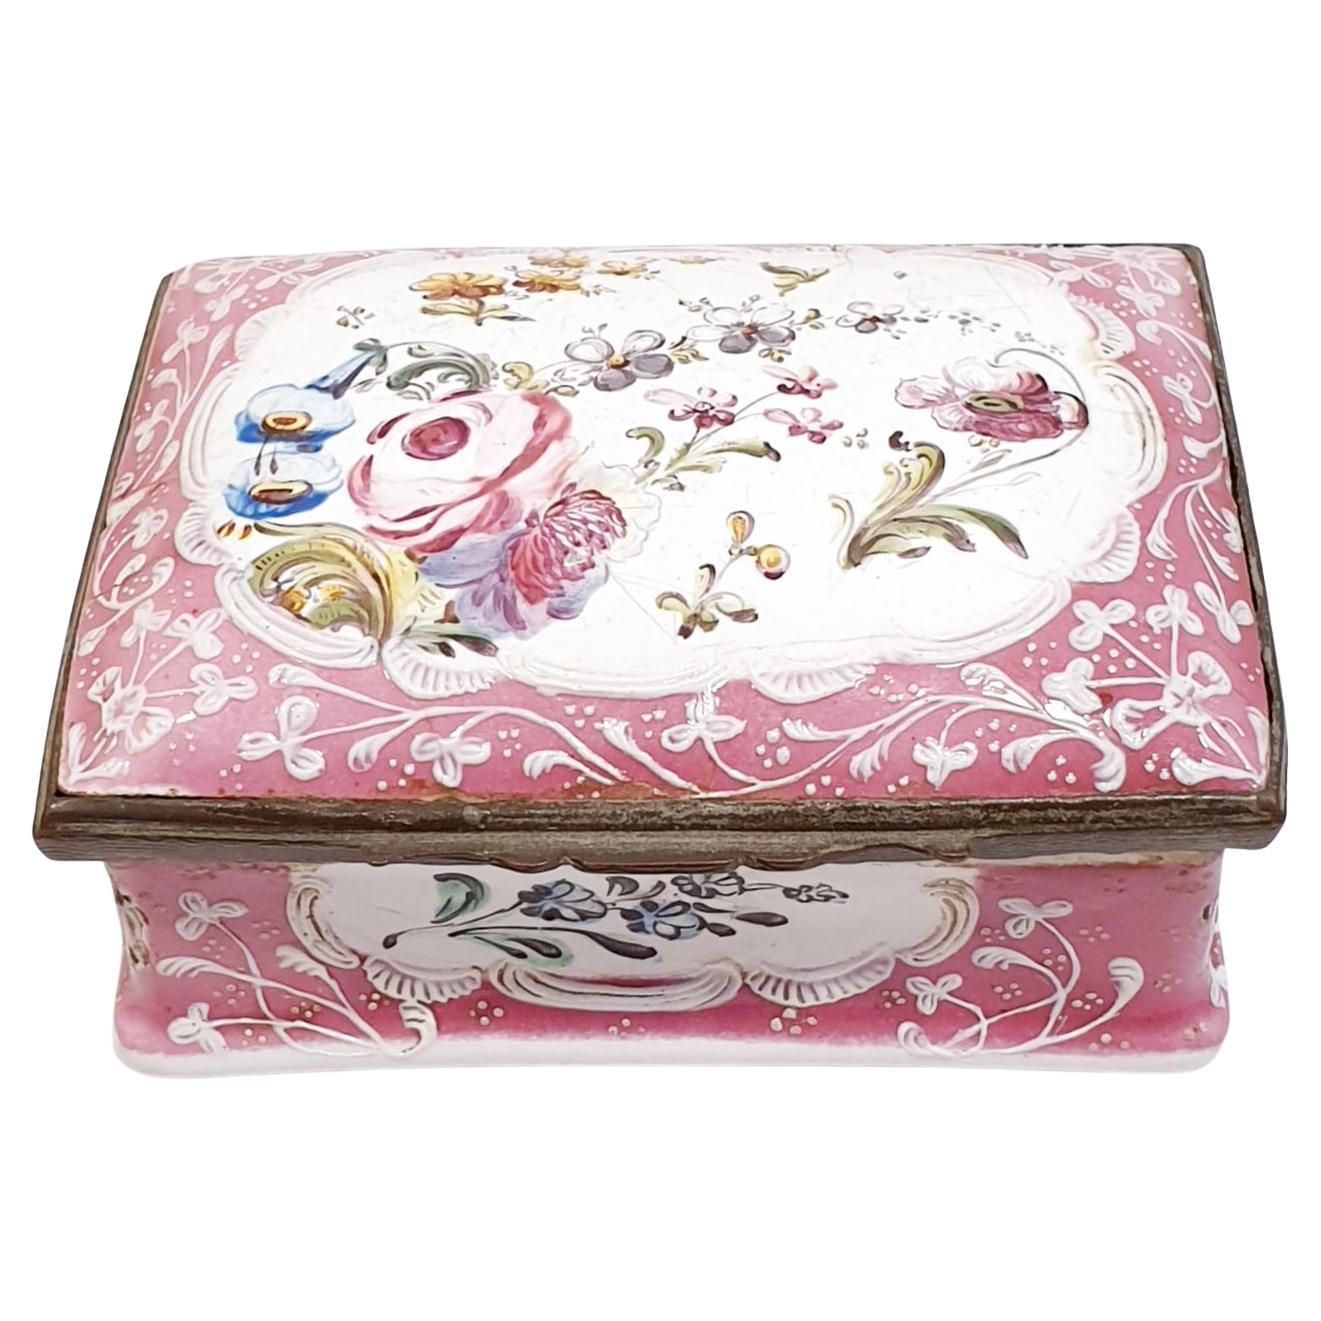 Boîte à bijoux ancienne du 19ème siècle en porcelaine rose peinte à la main avec fleurs